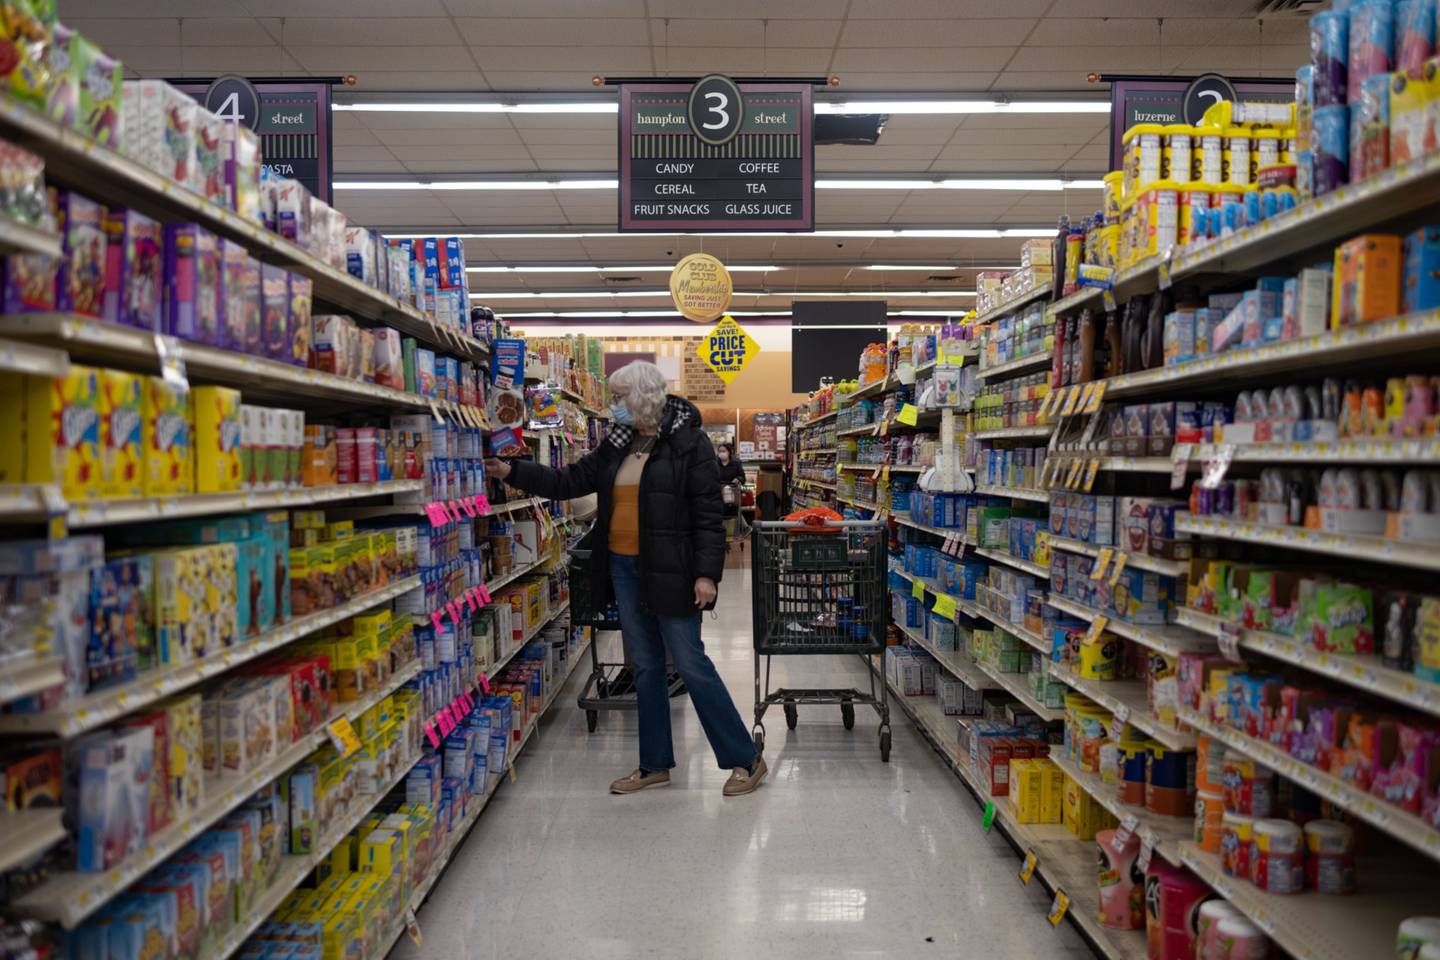 Un comprador en el supermercado Gerrity's en Scranton, Pensilvania, Estados Unidos, el jueves 24 de febrero de 2022. Scranton, Pensilvania, ha experimentado un reciente cambio económico, pero el estado de ánimo de los lugareños sobre el estado de Estados Unidos sigue siendo agrio. Fotógrafo: Hannah Beier/Bloomberg